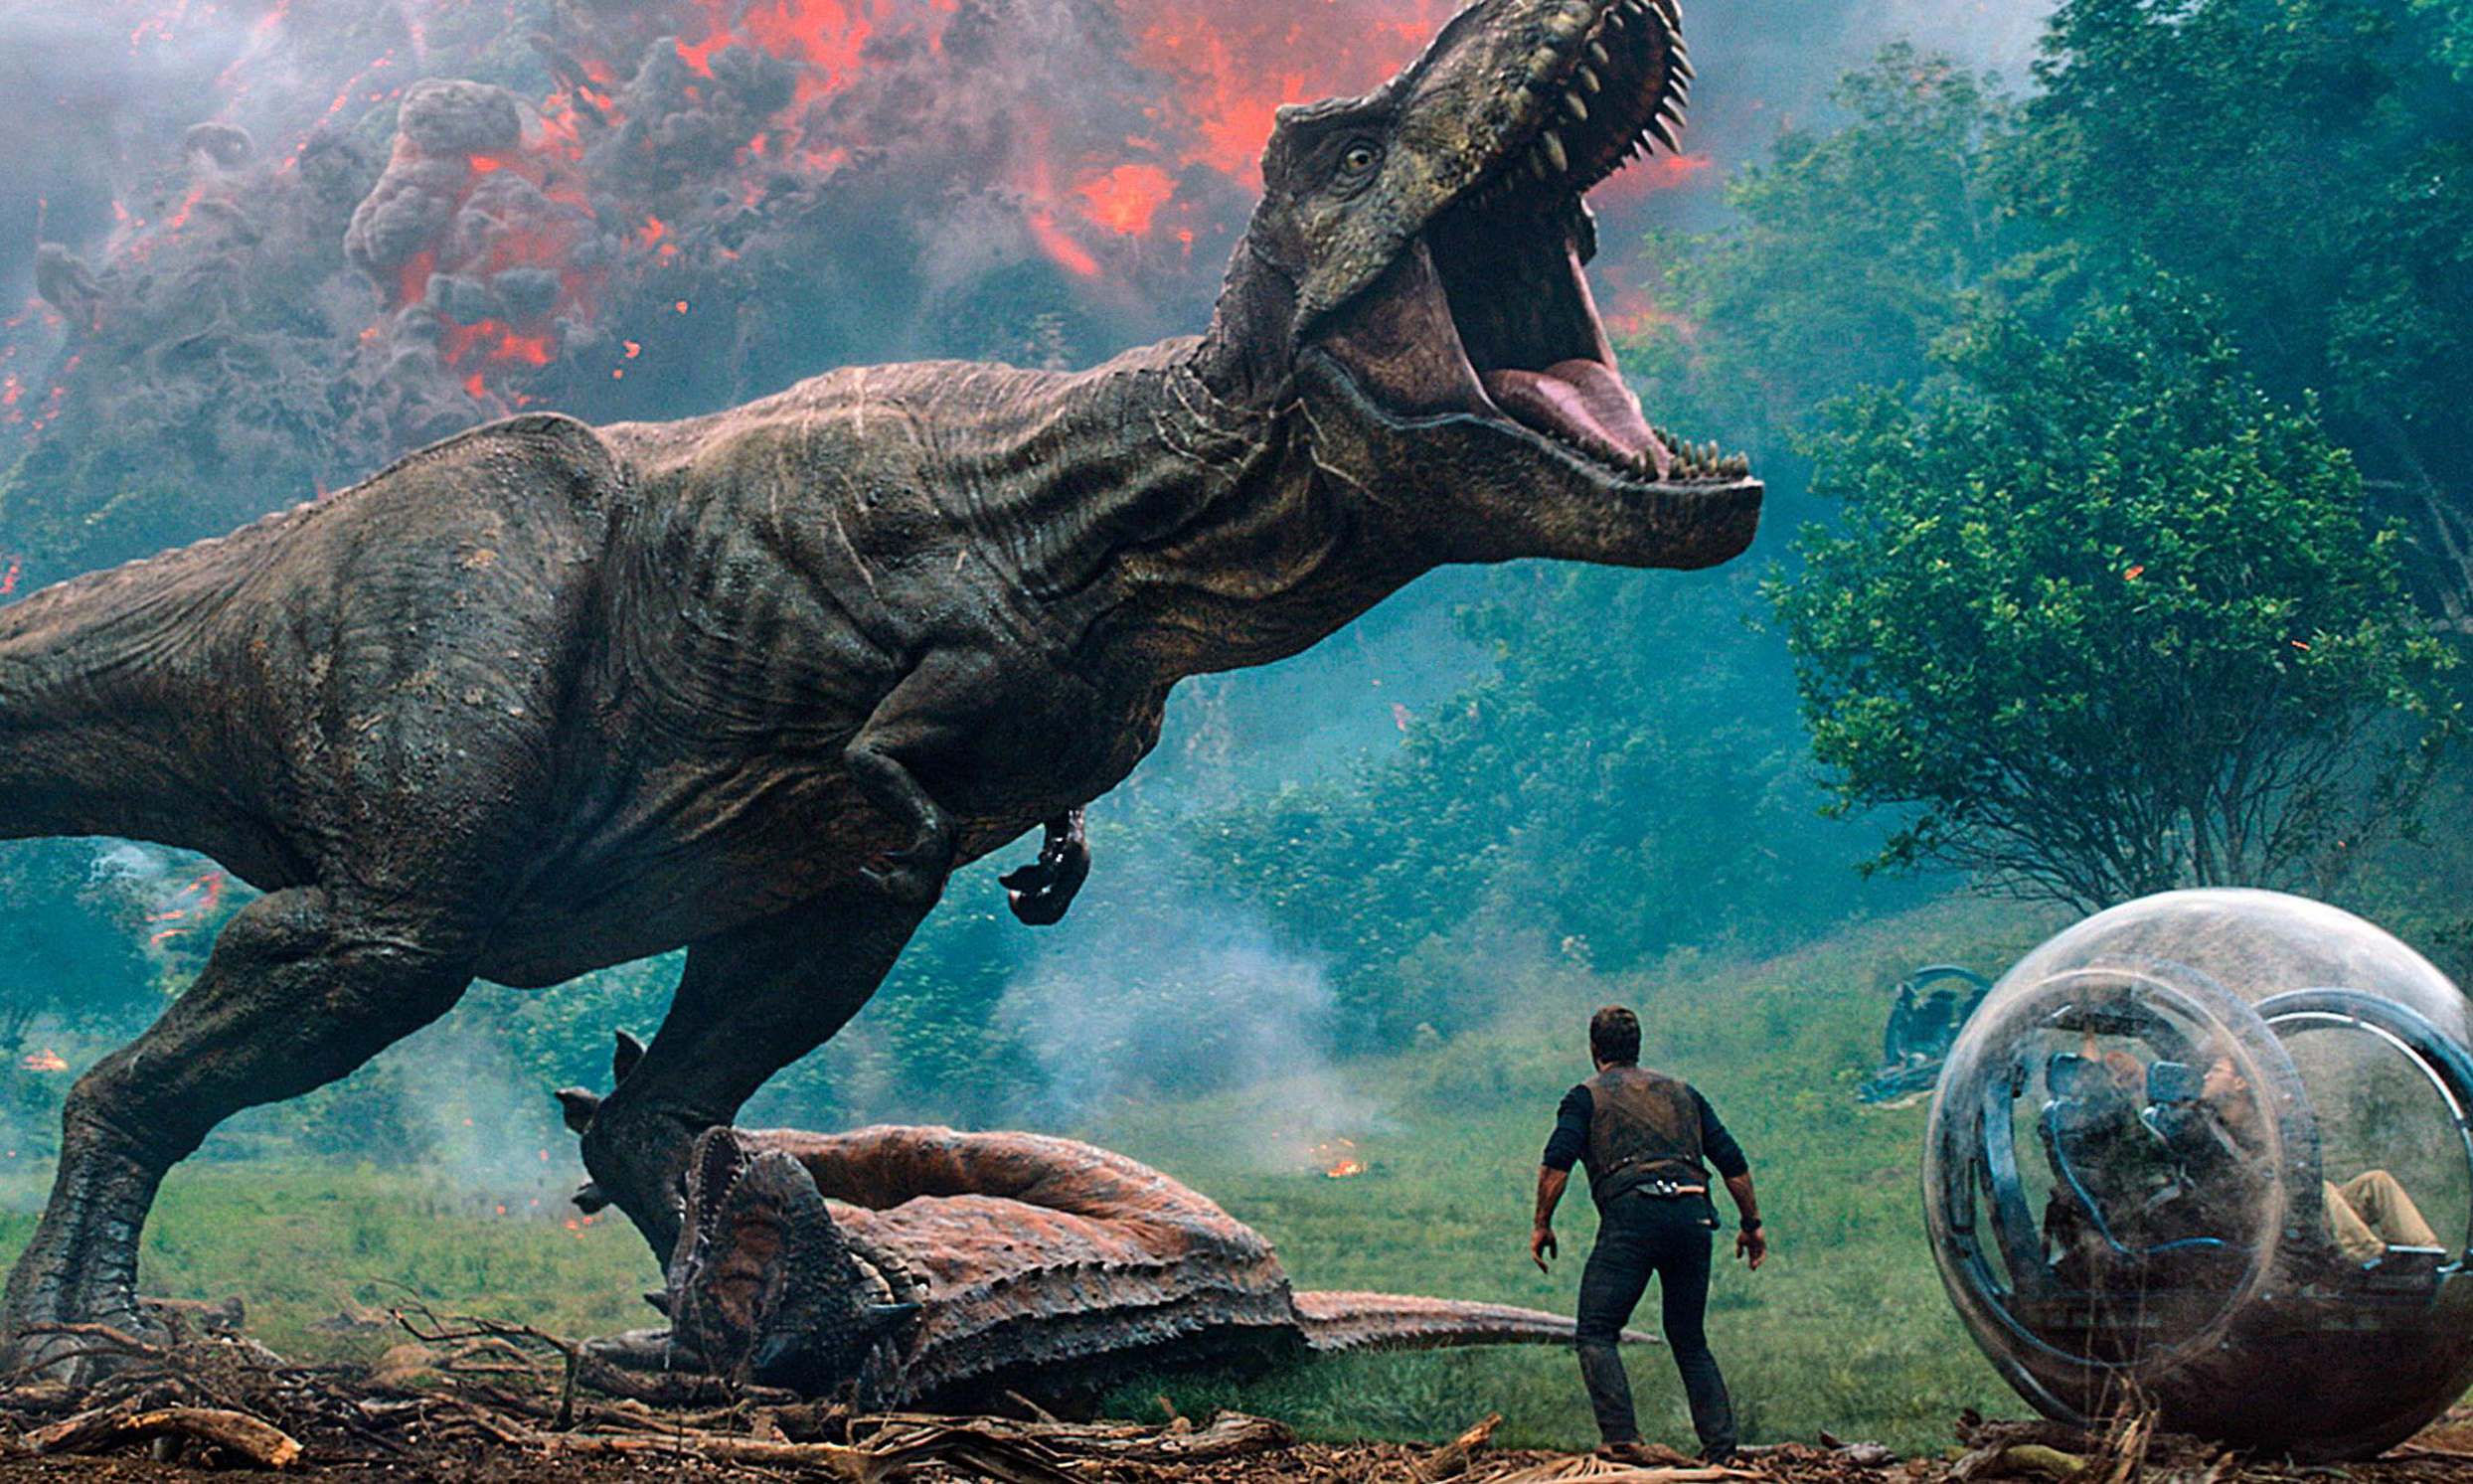 《侏罗纪世界2》首周海外票房狂收 1.511 亿美元